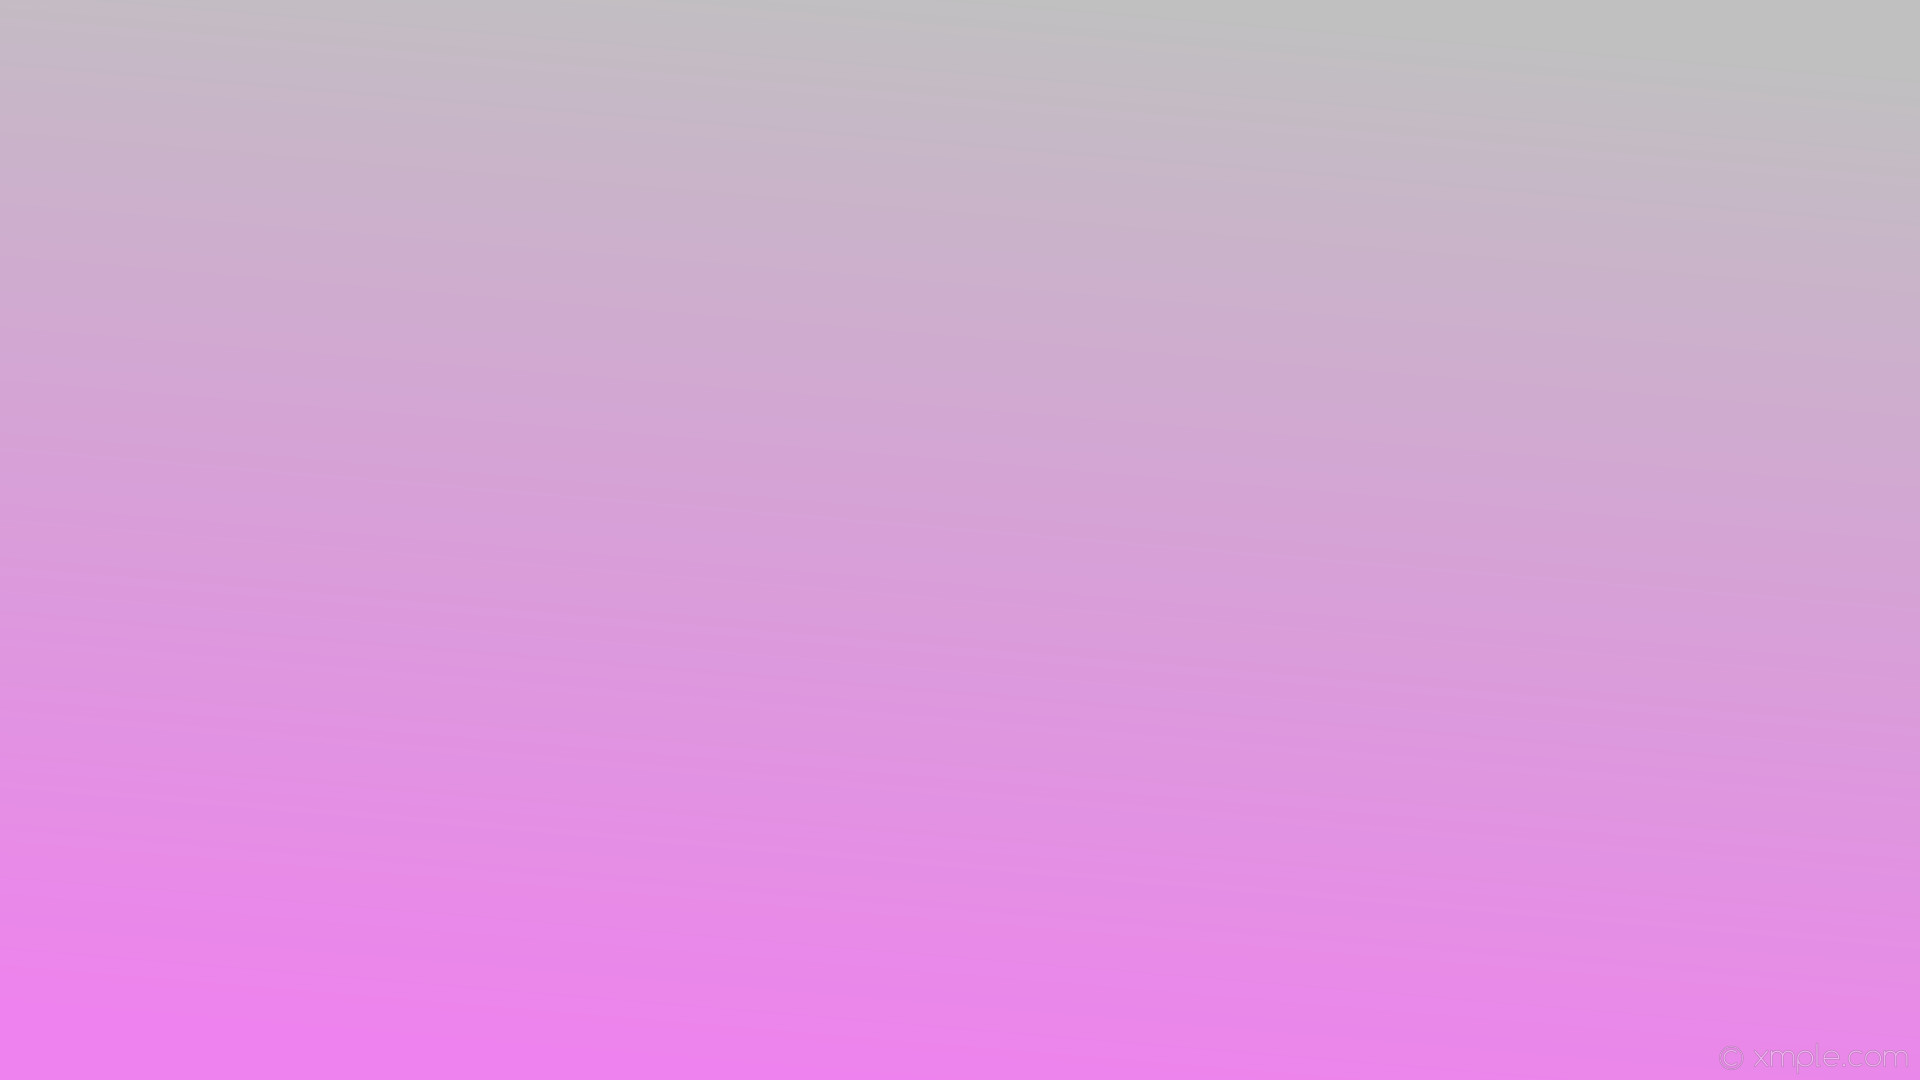 1920x1080 wallpaper grey linear purple gradient violet silver #ee82ee #c0c0c0 255Â°